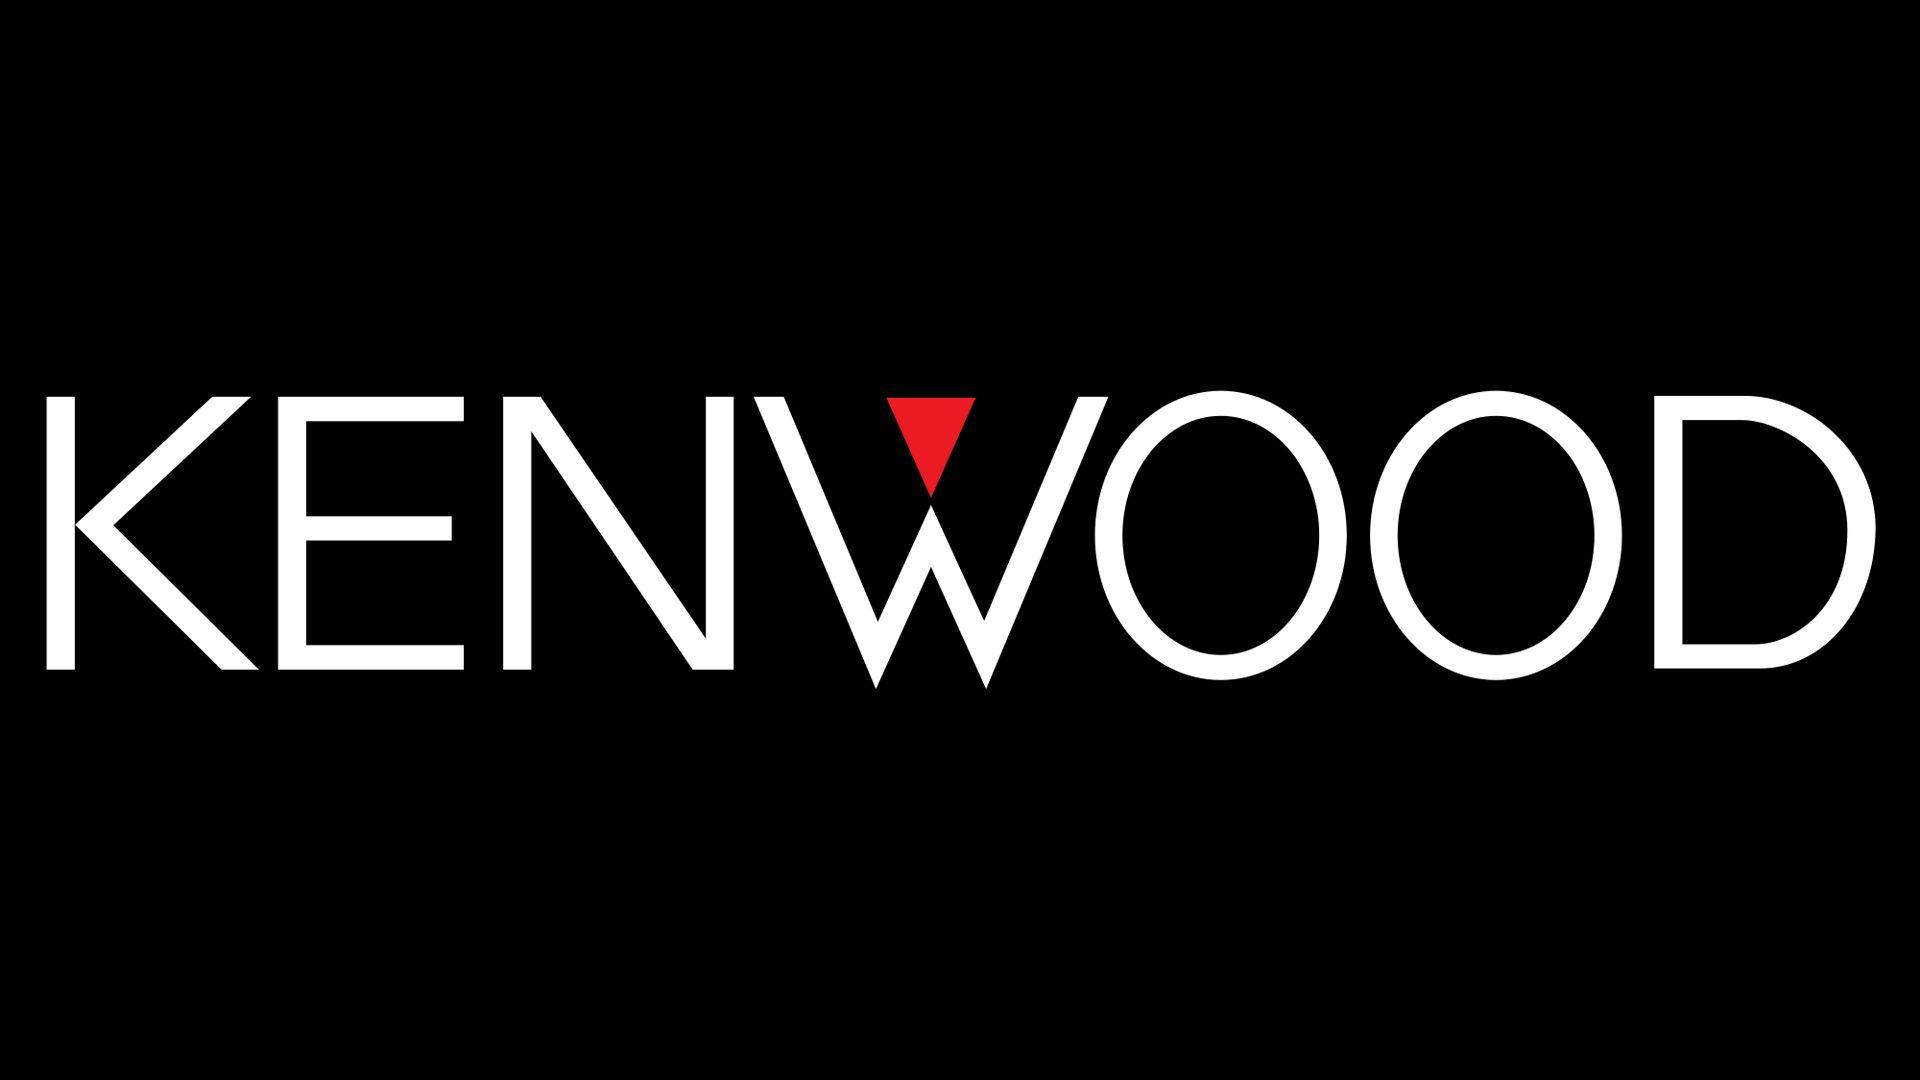 Kenwood Logo - Kenwood Logo, Kenwood Symbol, Meaning, History and Evolution